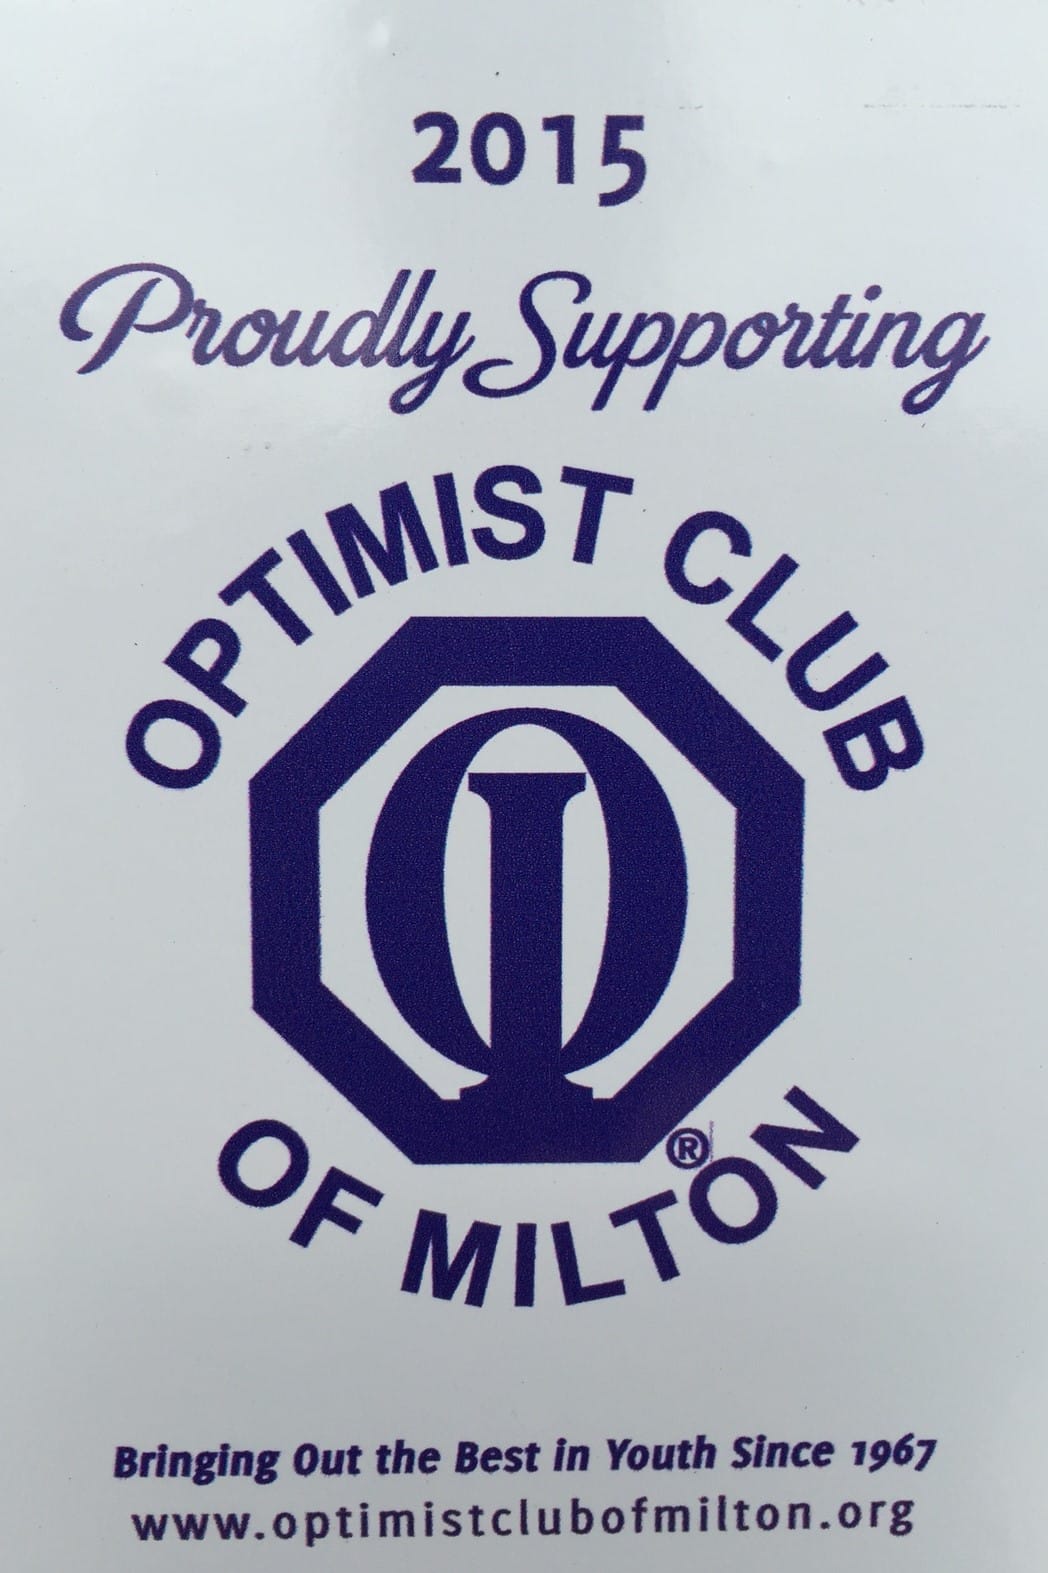 Optimist club sticker for door of Optical